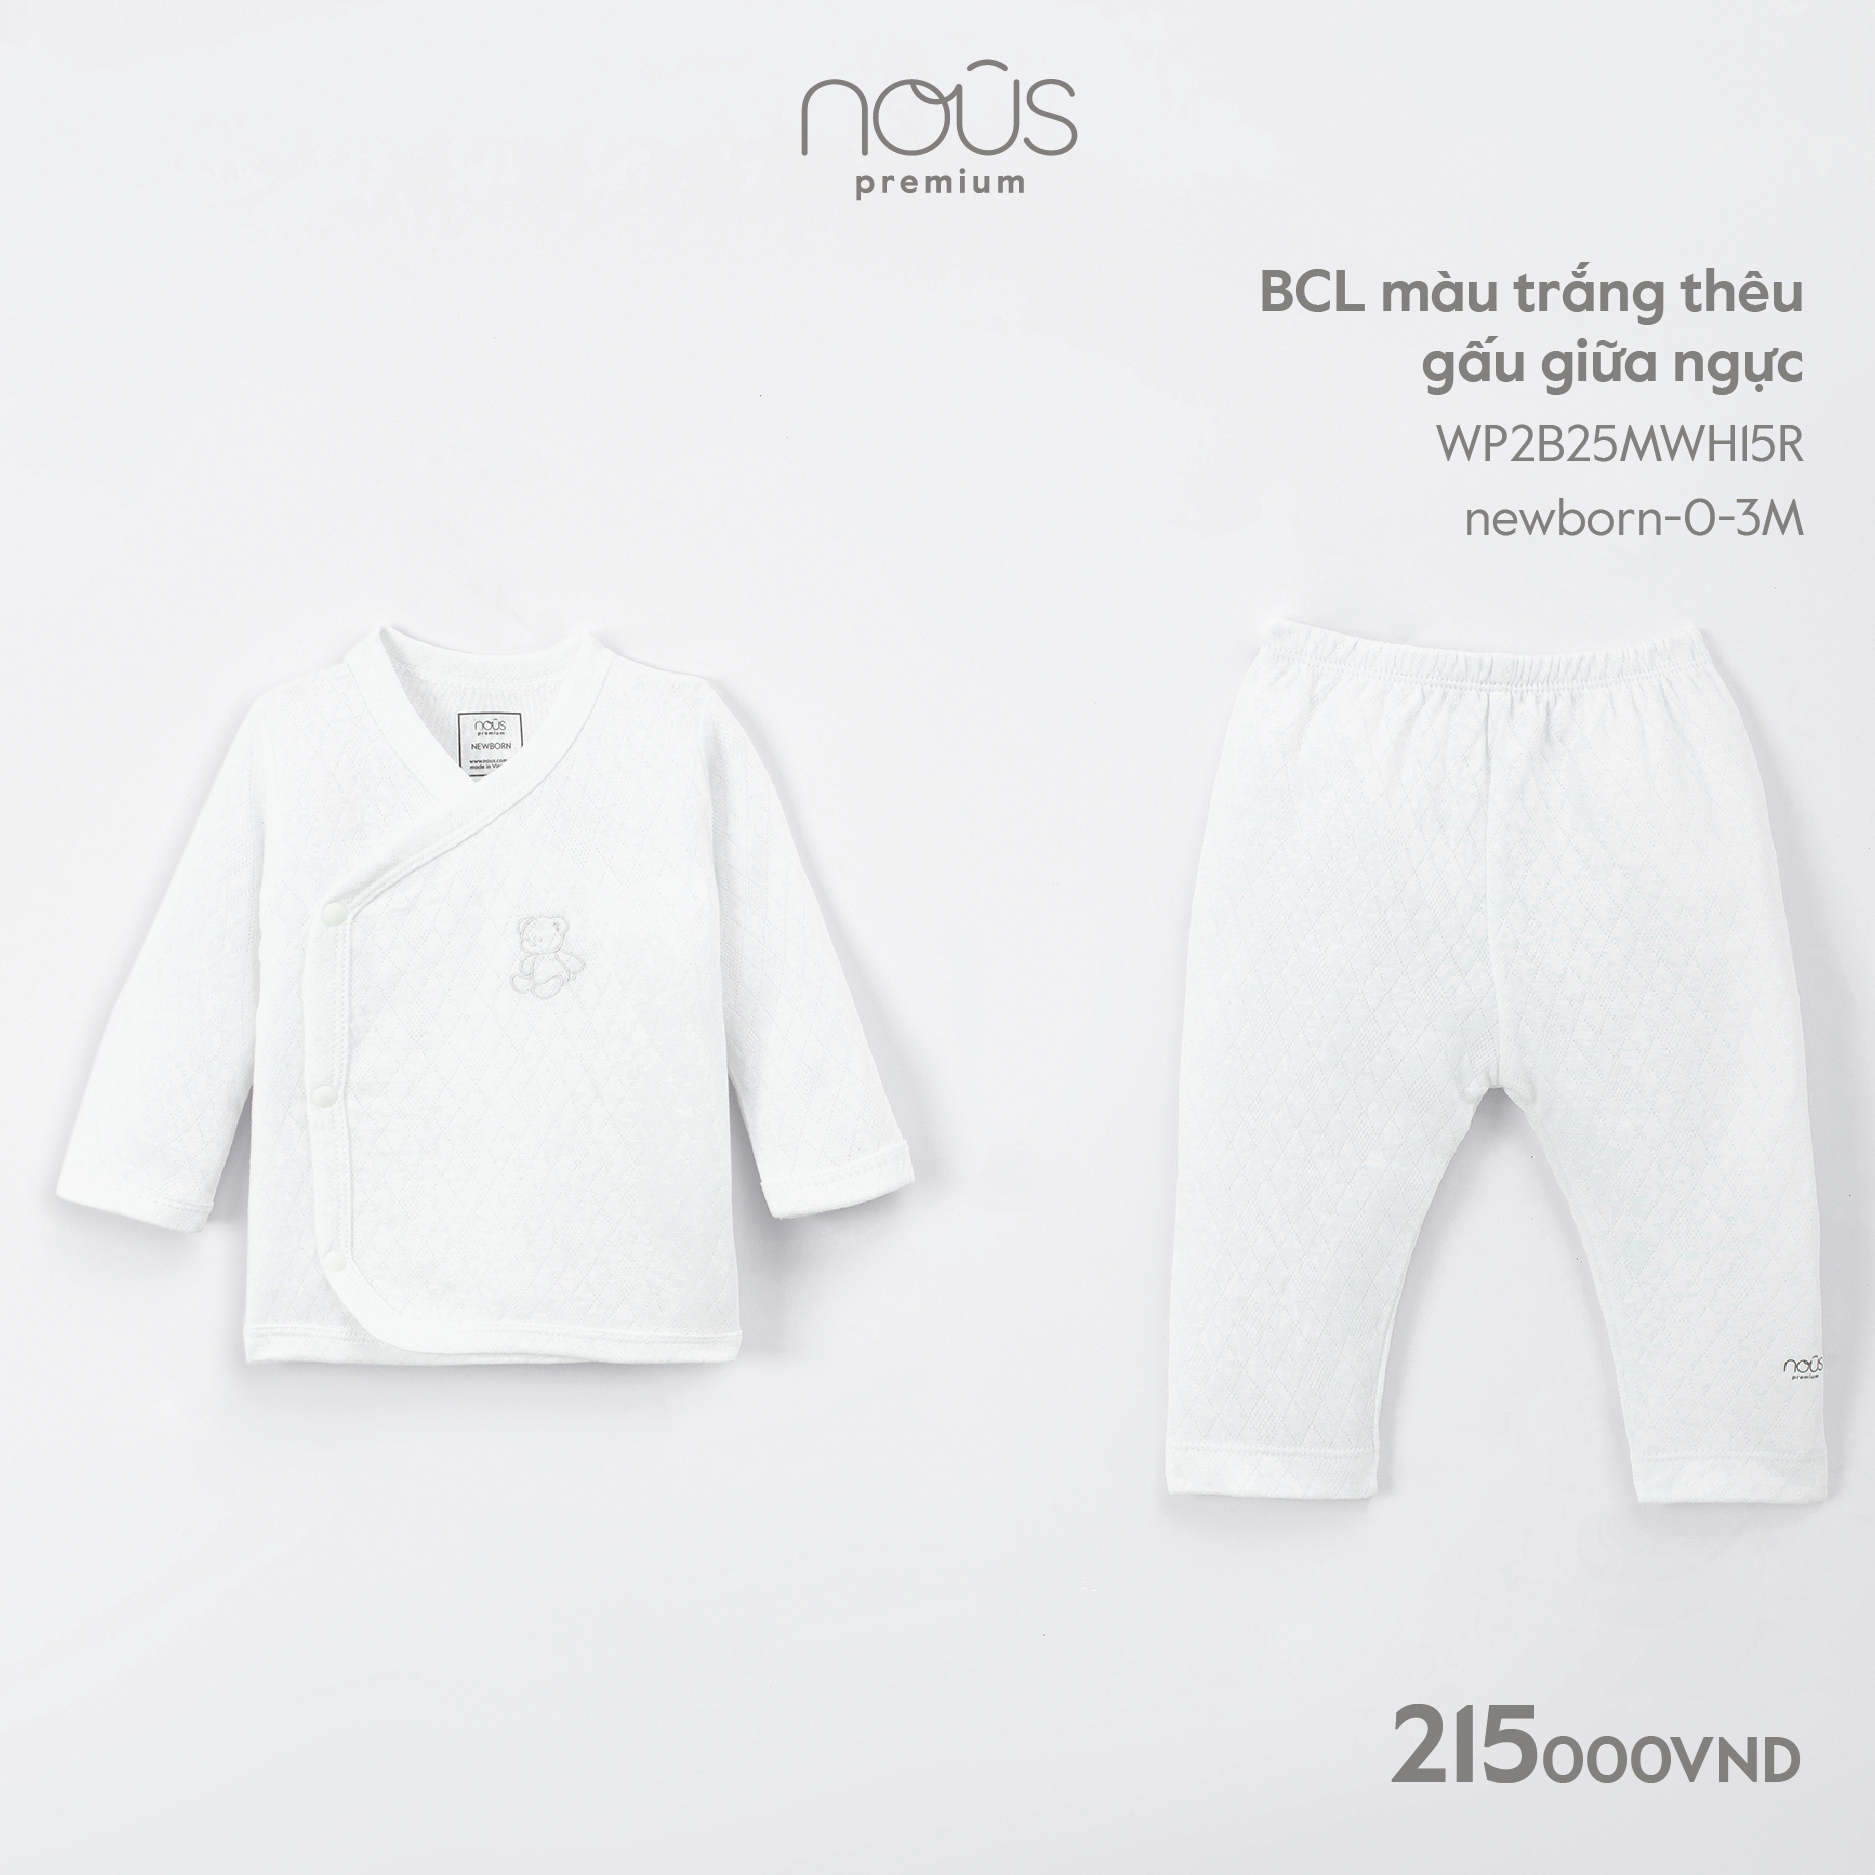 Bộ quần áo cài lệch Nous nhiều màu sắc cho bé trai, bé gái chất liệu Nu Premium cho bé sơ sinh đến 12-18 tháng tuổi